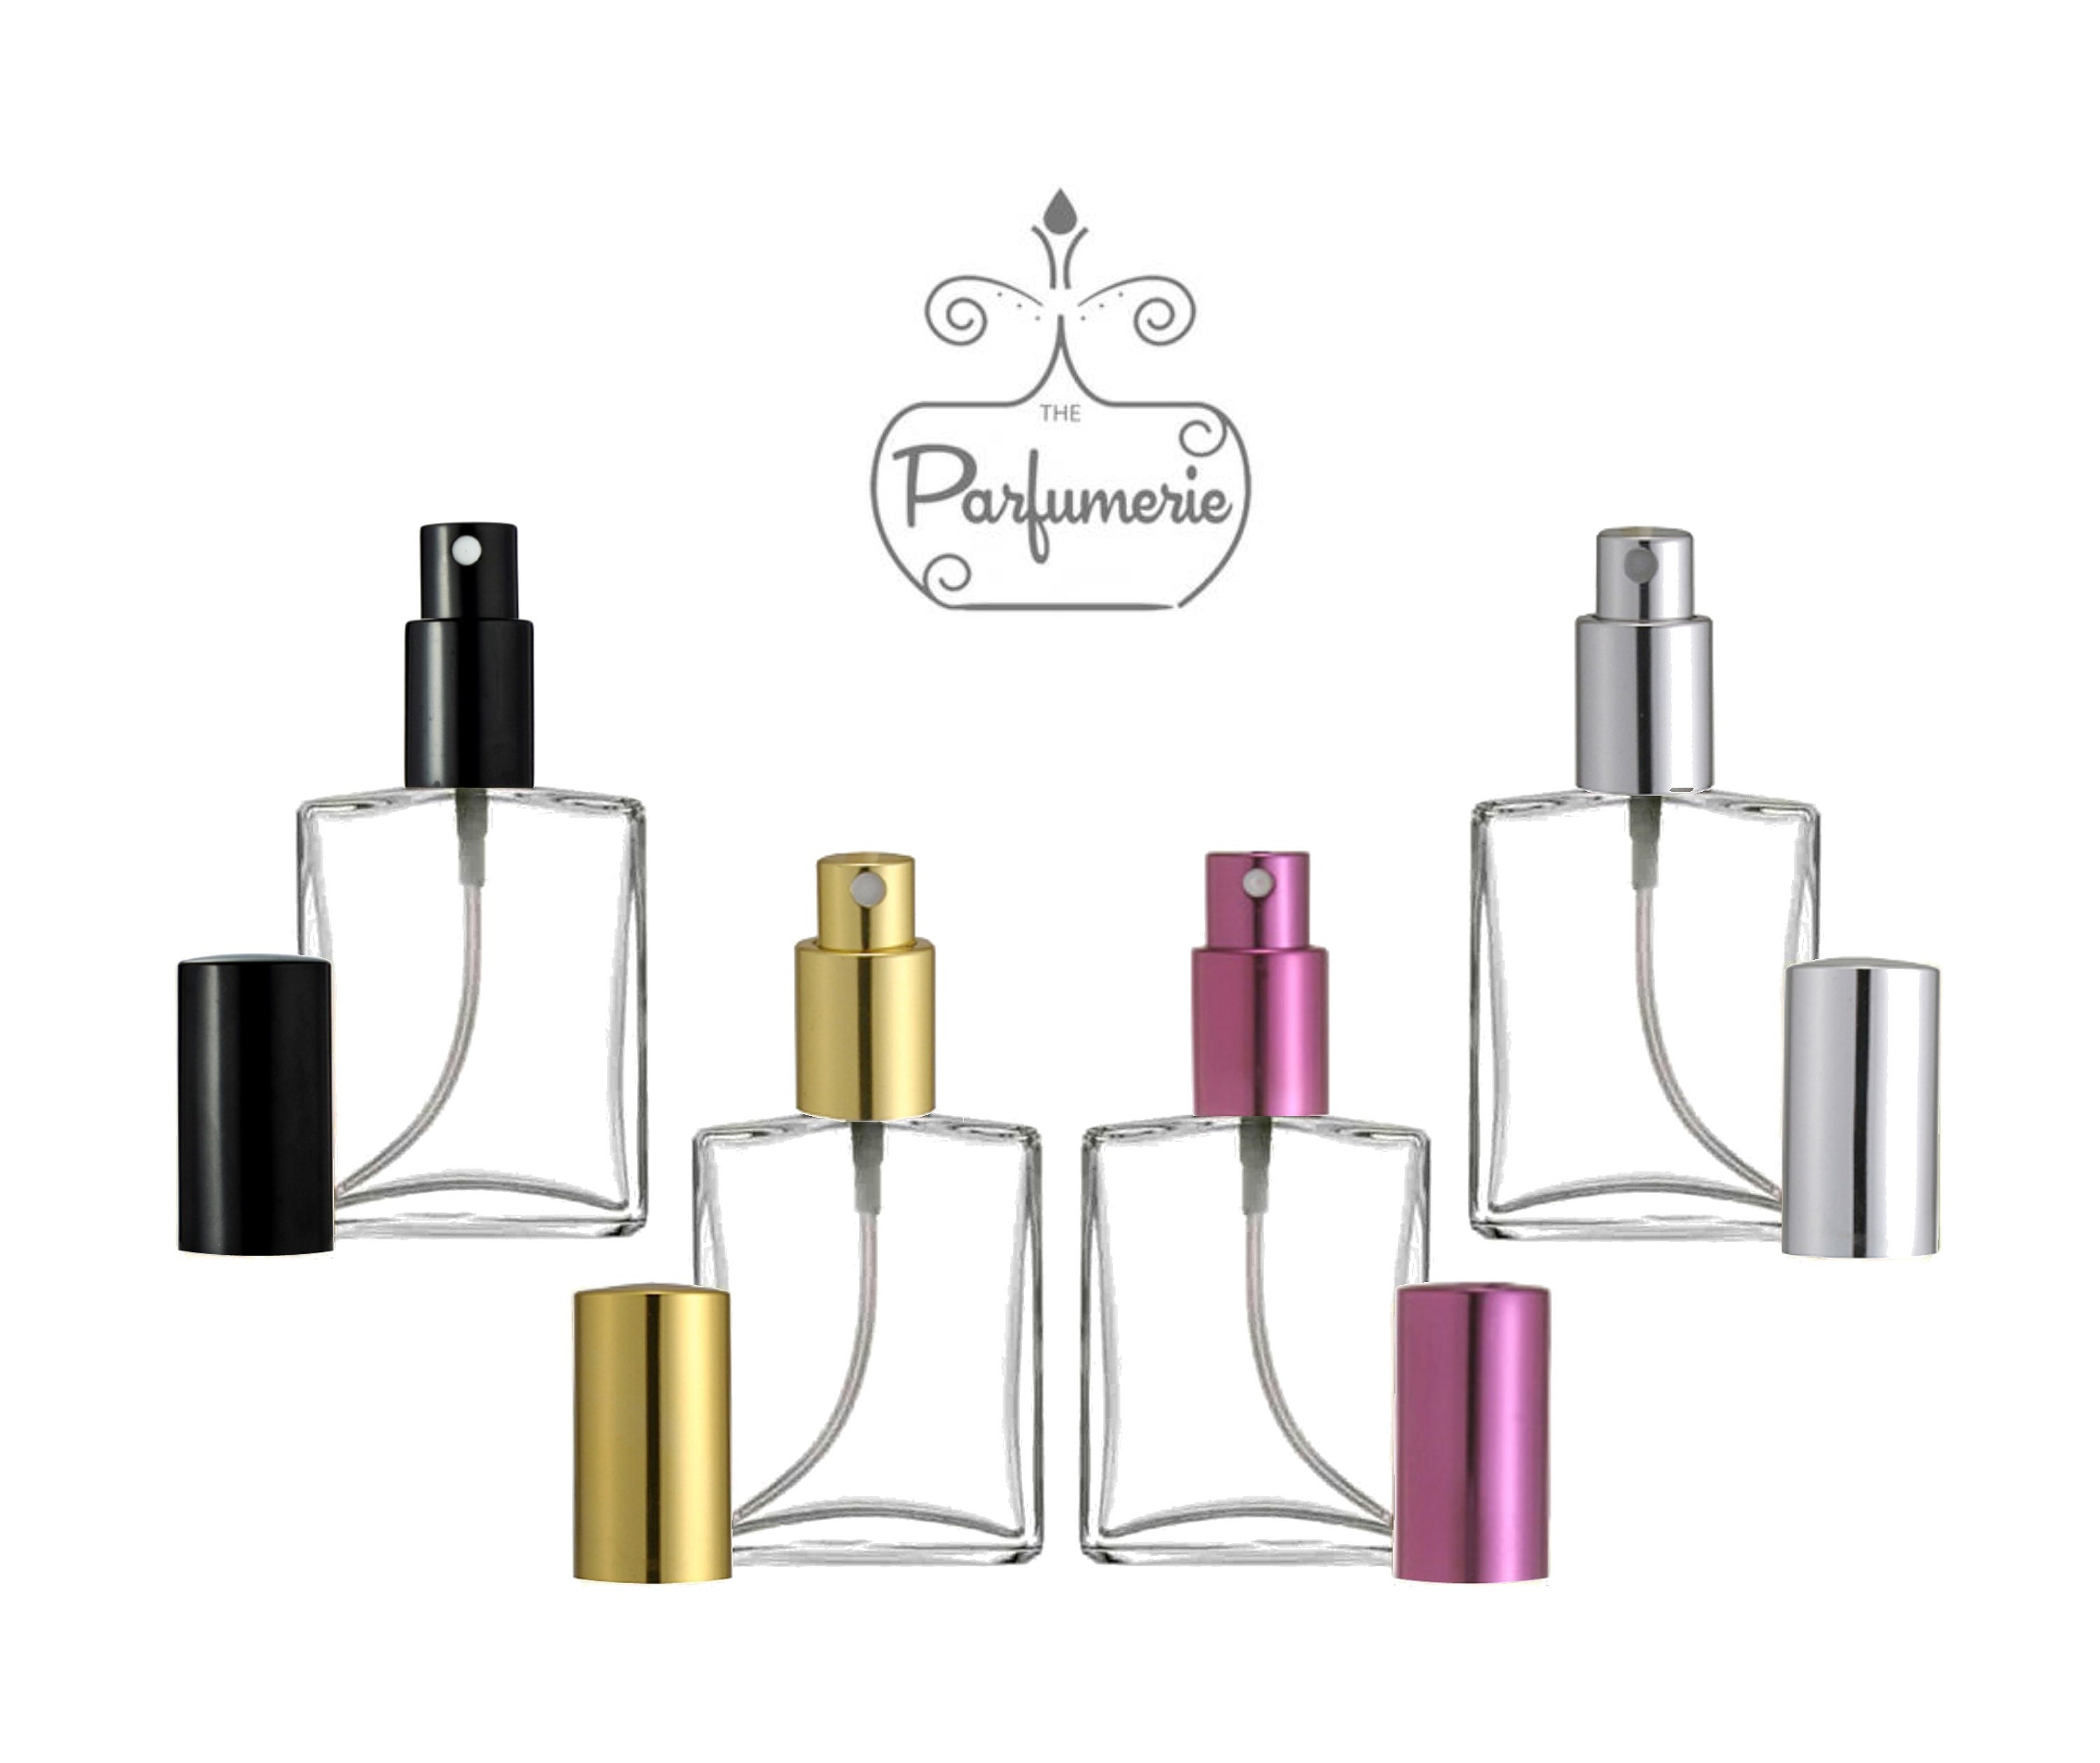 Glass Spray Bottles Perfume Bottles qty 12 Refillable for 